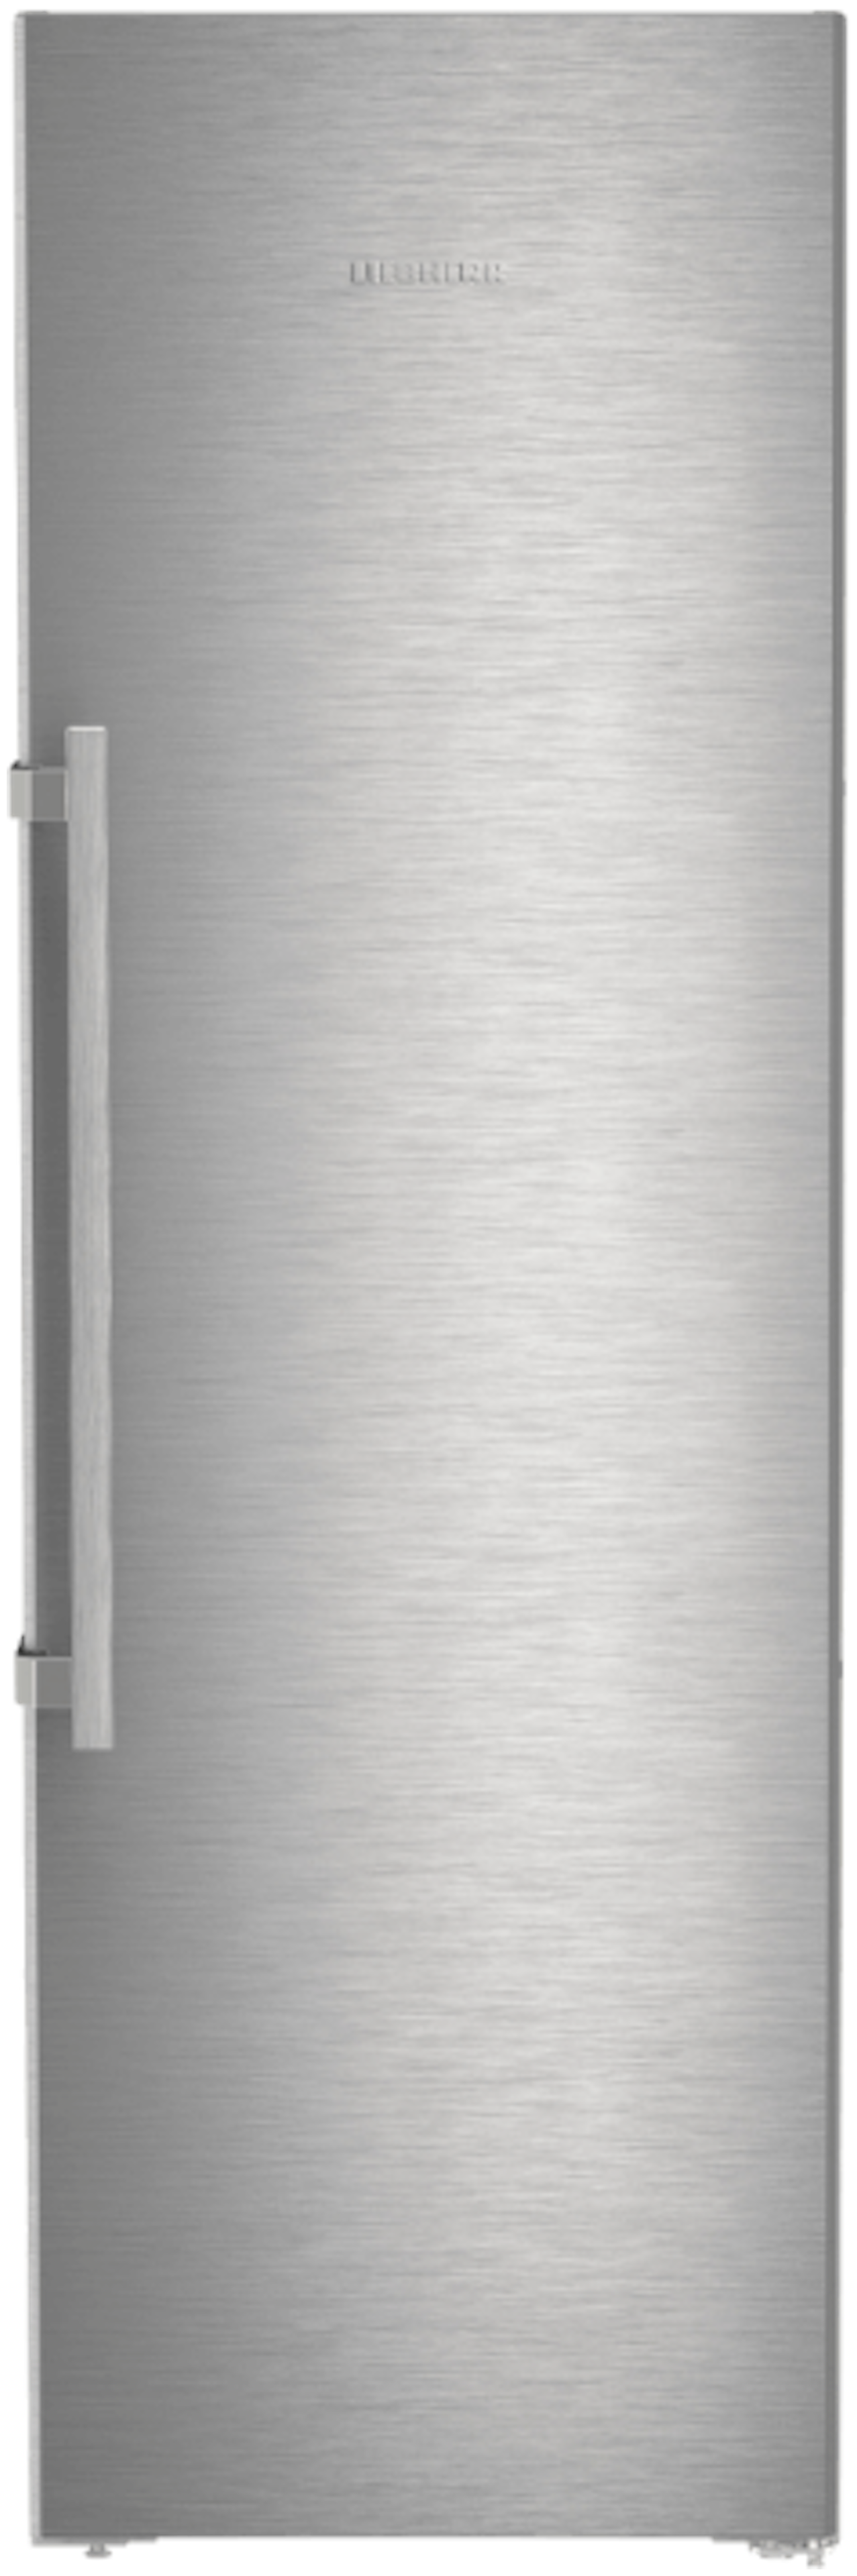 Liebherr koelkast SRSDE 5230-20 afbeelding 3